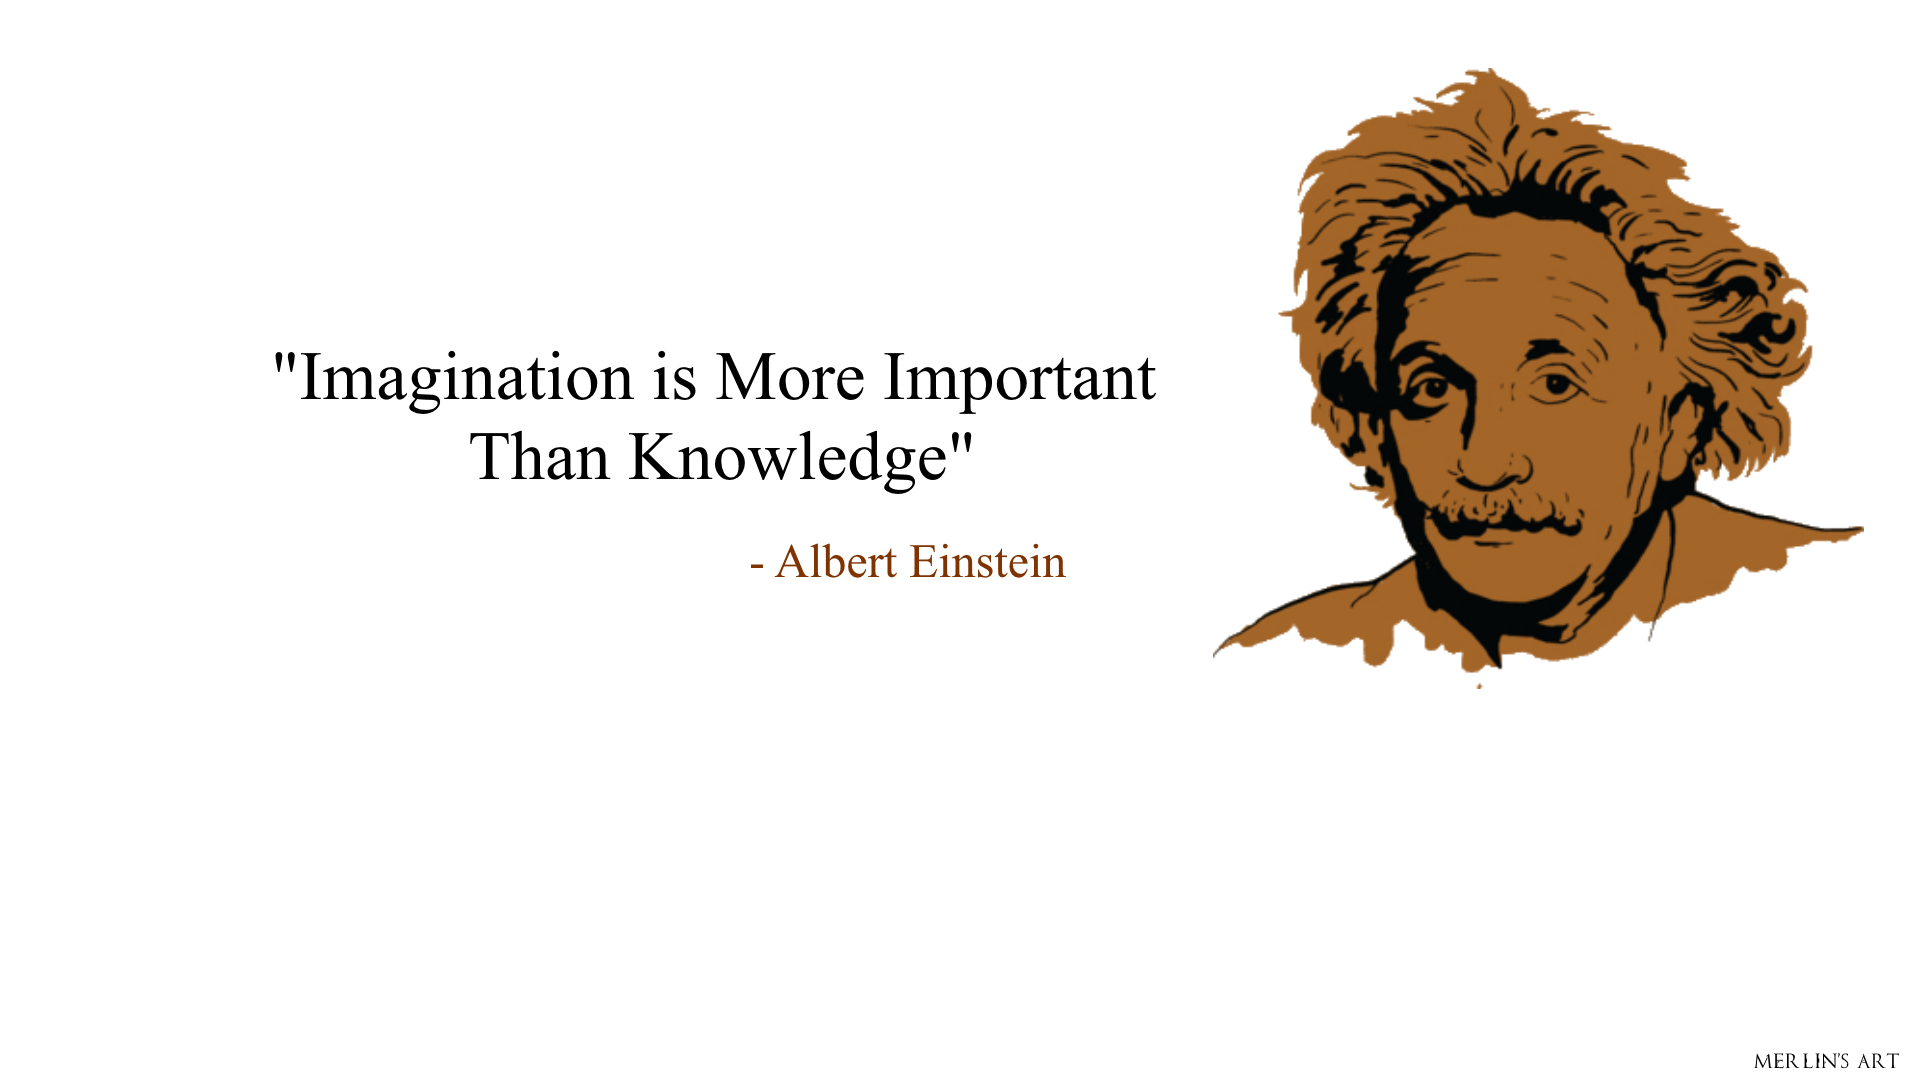 Albert Einstein Quote - Desktop Wallpaper by DanielMerlin on DeviantArt